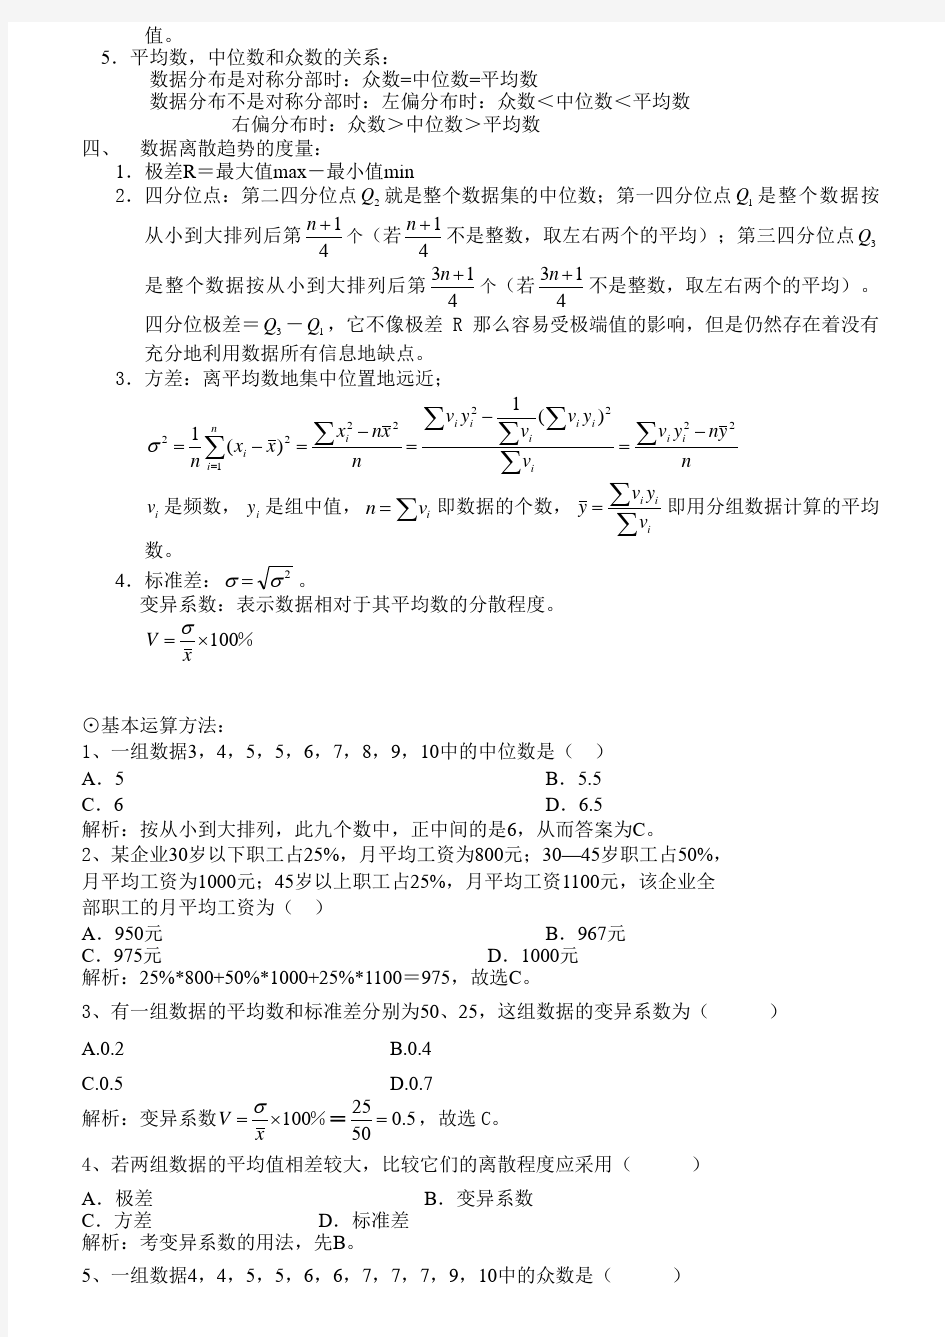 《数量方法(二)》(代码00994)自学考试复习提纲-附件1